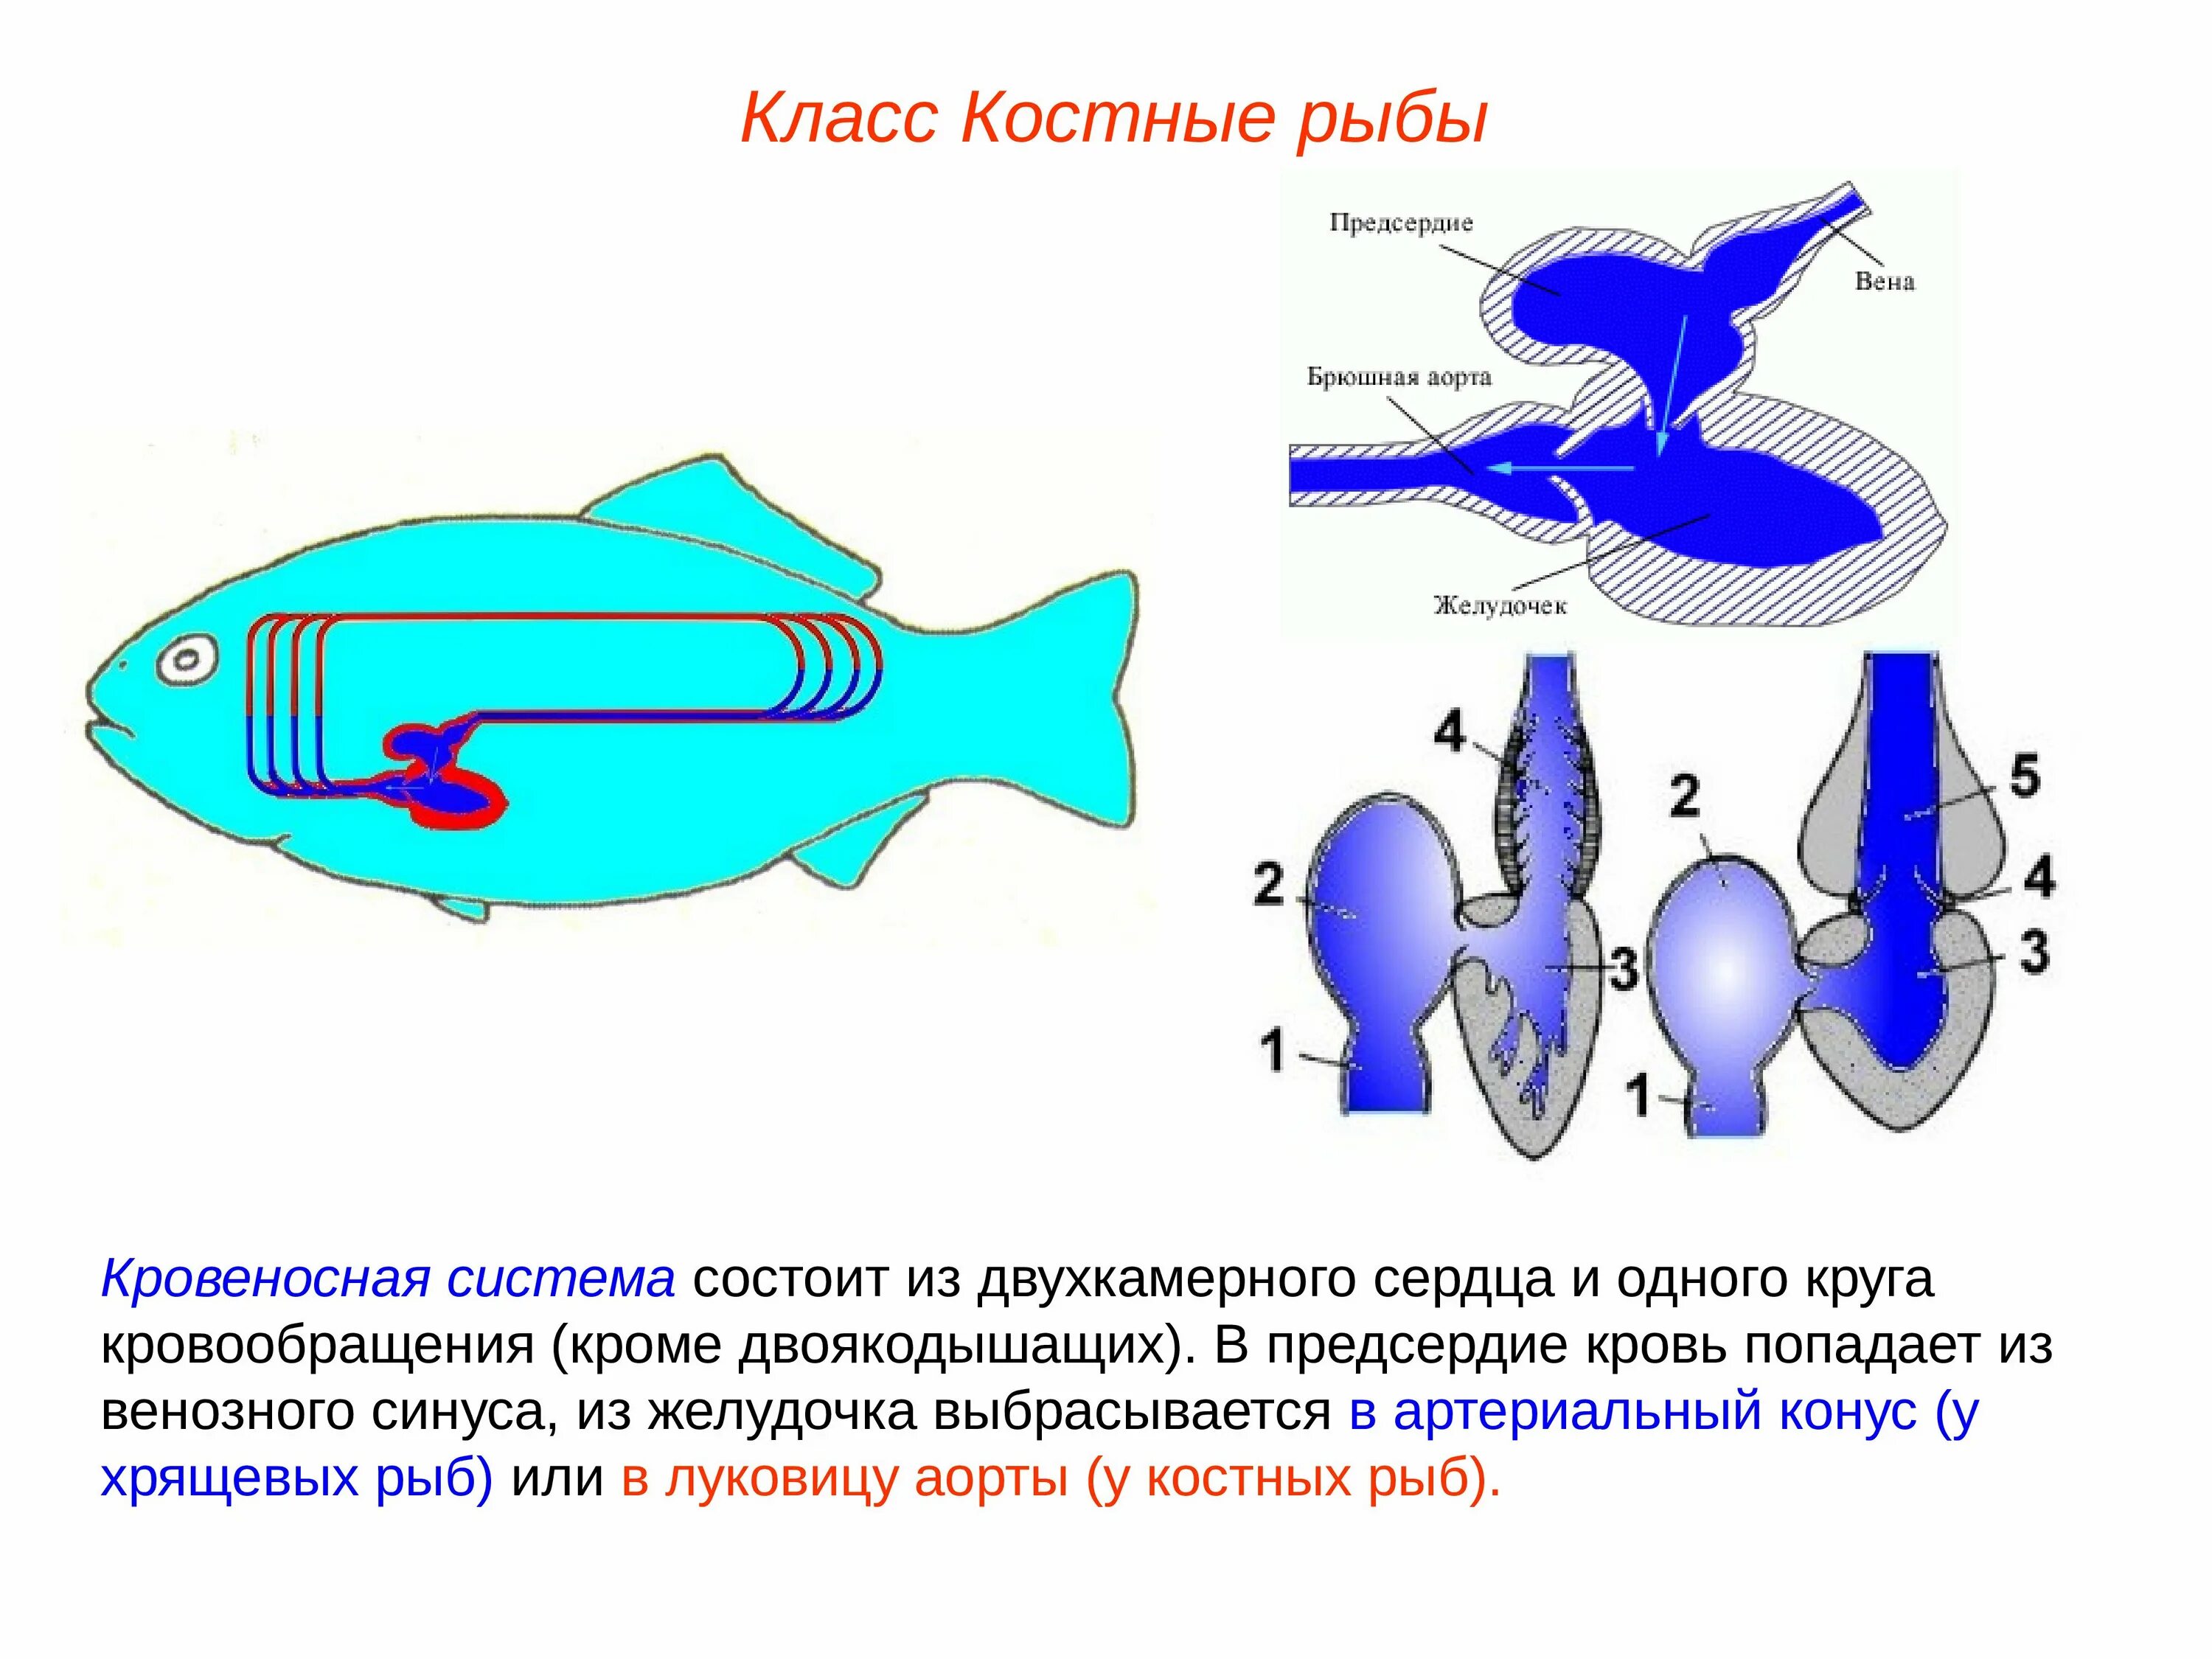 Сердце рыб состоит из камер. Система кровообращения костистых рыб. Схема кровеносной системы костистой рыбы. Строение сердца костных рыб. Строение сердца хрящевых рыб.